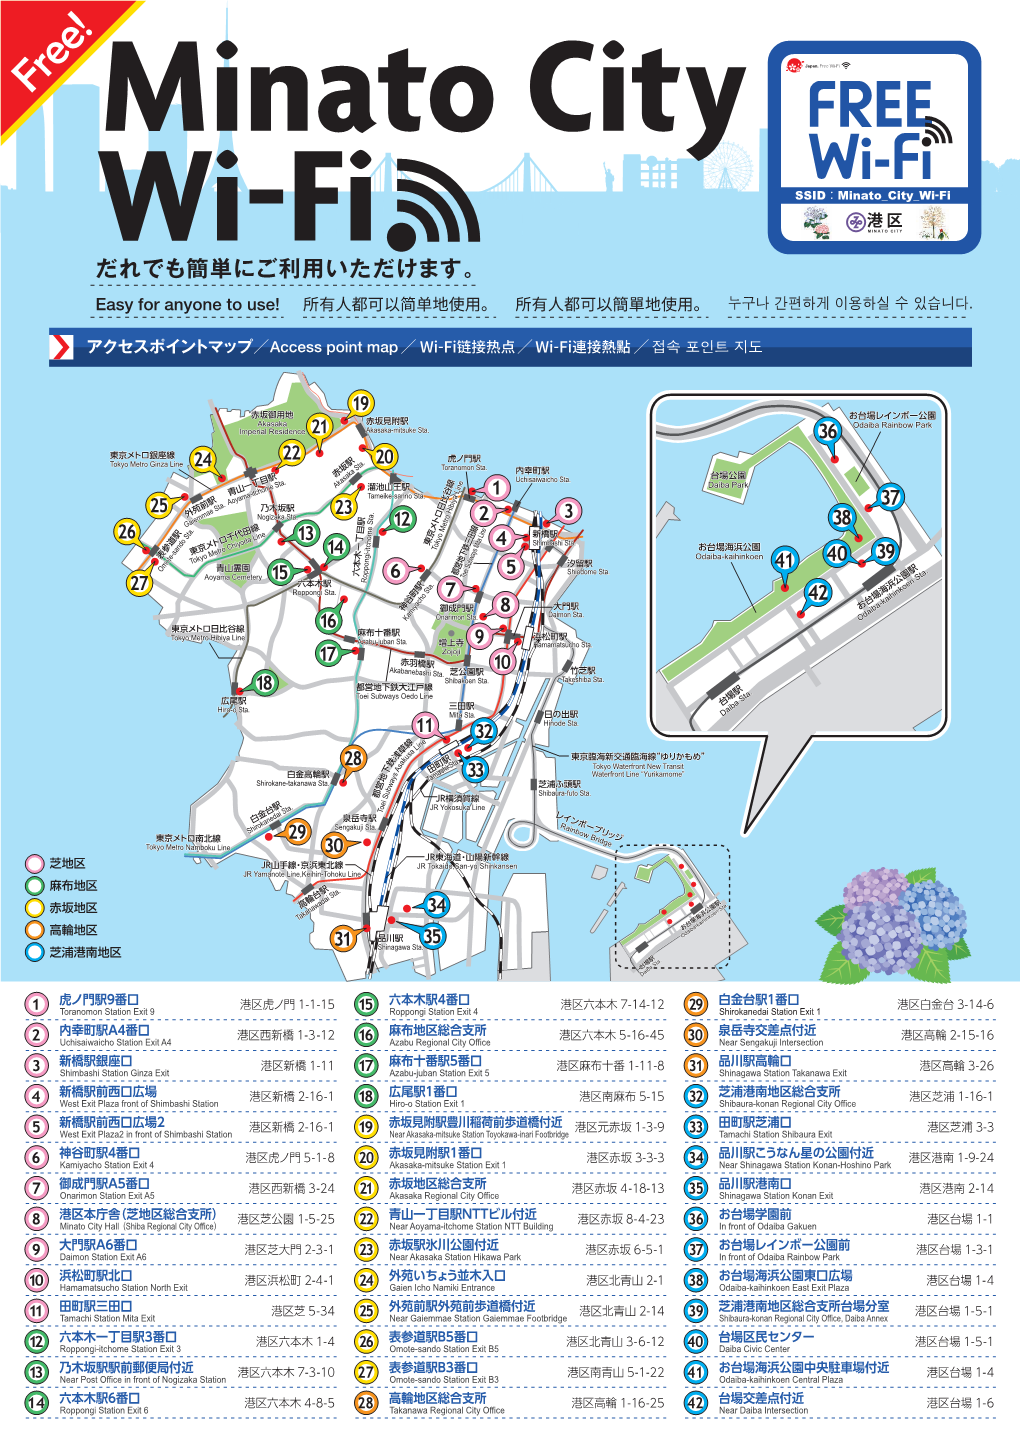 Minato City Wi-Fi だれでも簡単にご利用いただけます。